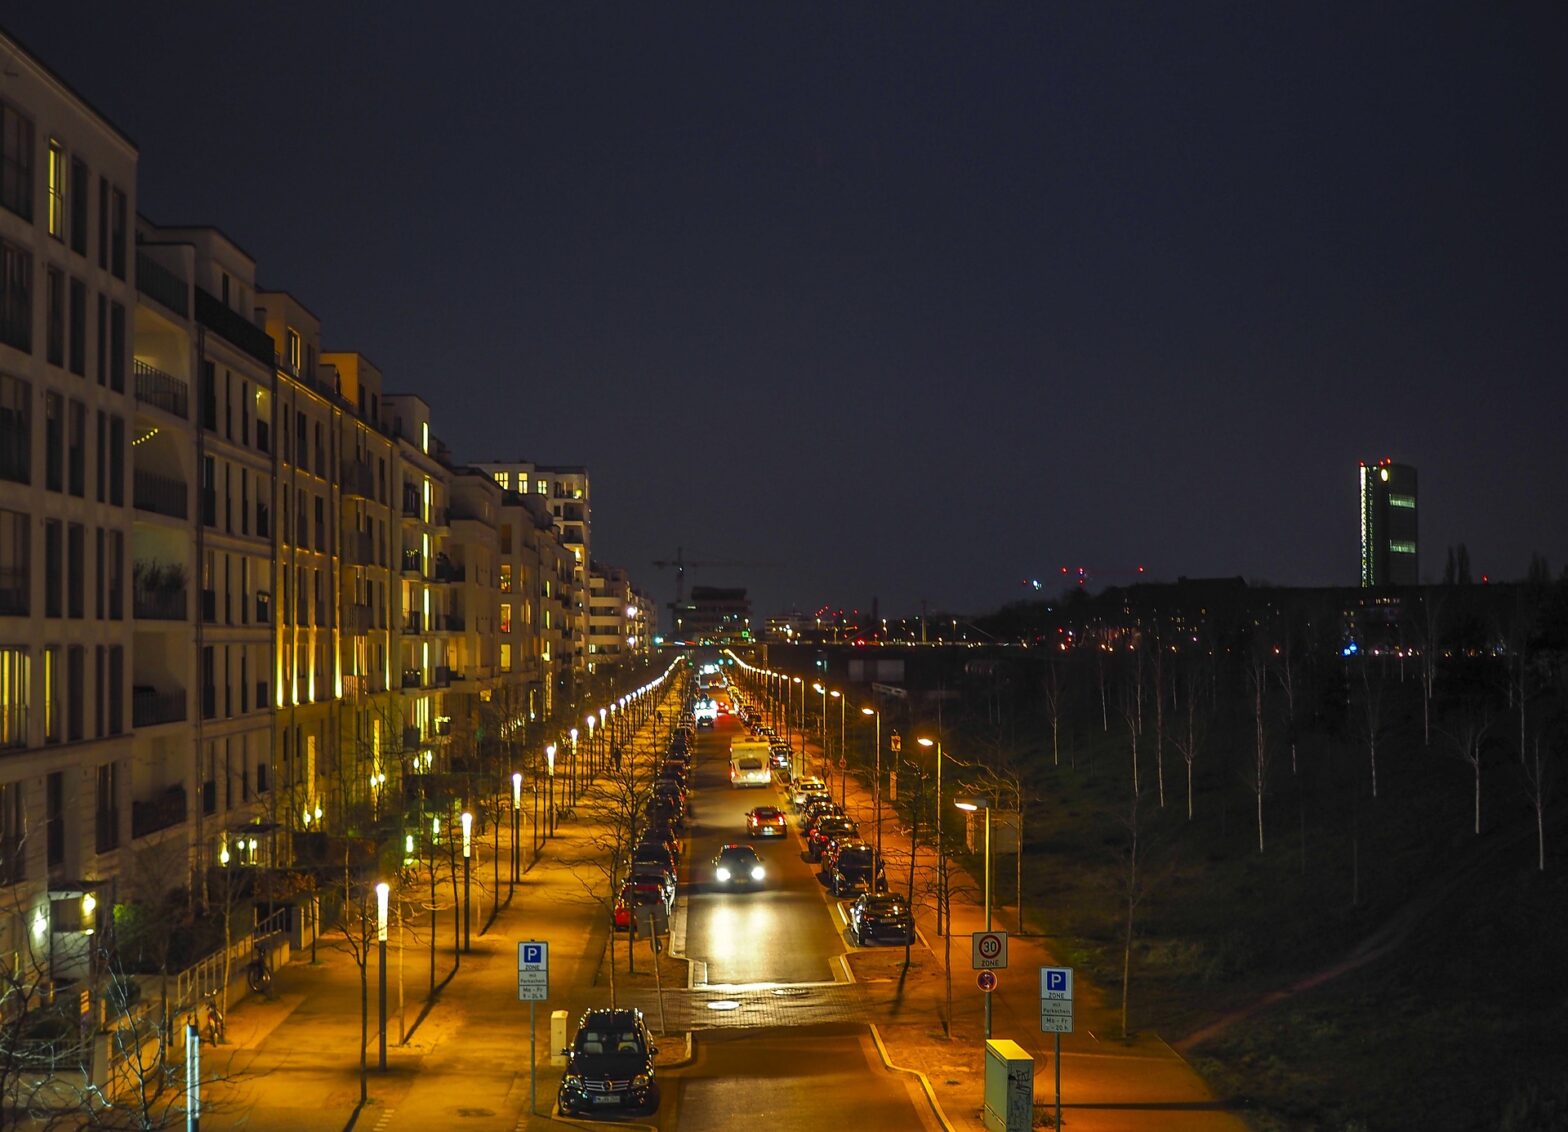 beleuchtung city smart 1568x1132 - Smart City Beleuchtung: Energieeffizienz durch intelligente Straßenbeleuchtung